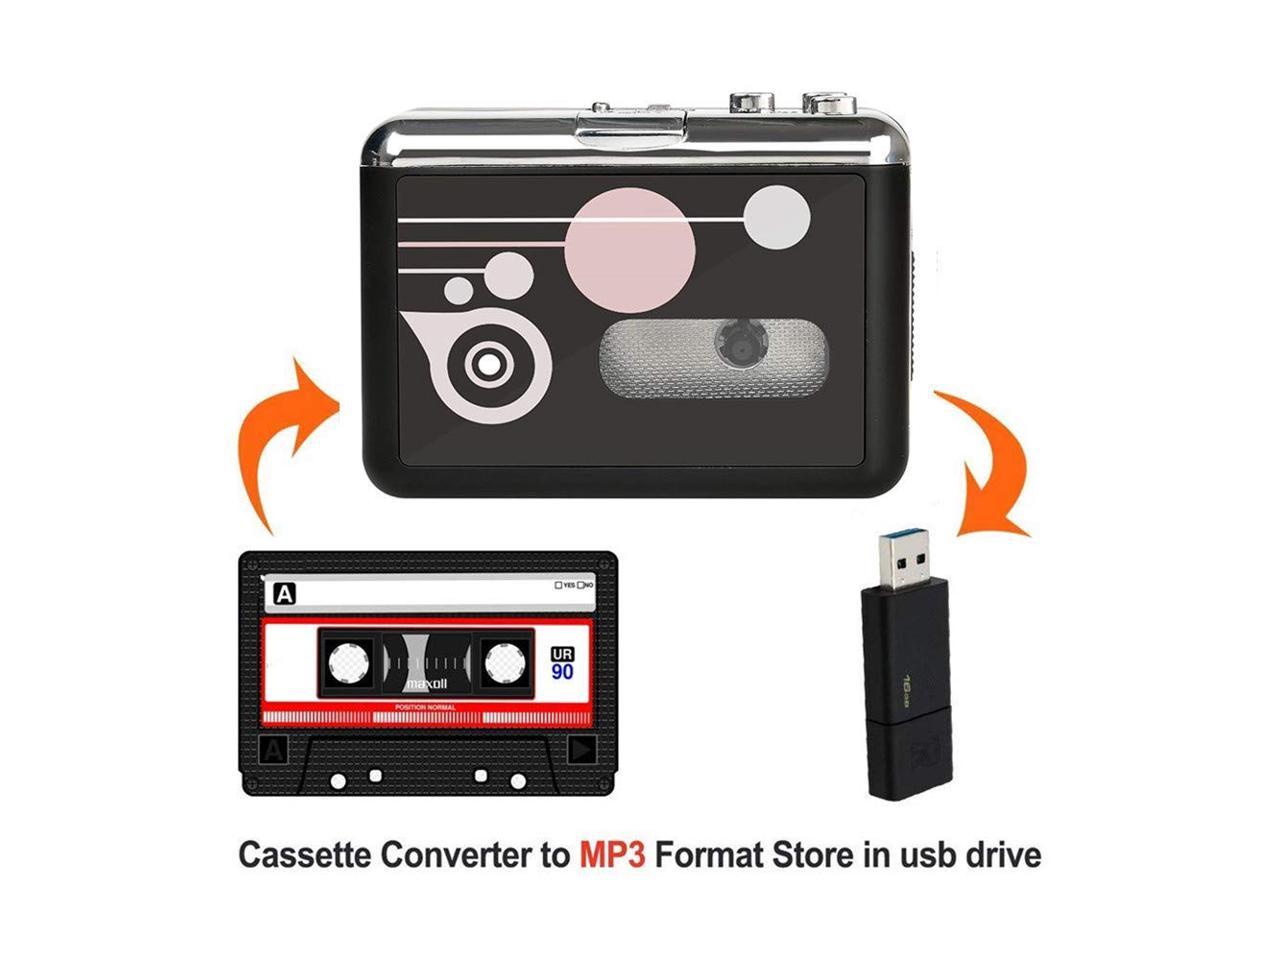 Rybozen Cassette Tape to MP3 CD Convertitore PC via USB Portable USB Cassette Tape Player Cattura musica audio-Convertire cassette di cassette Walkman in formato MP3